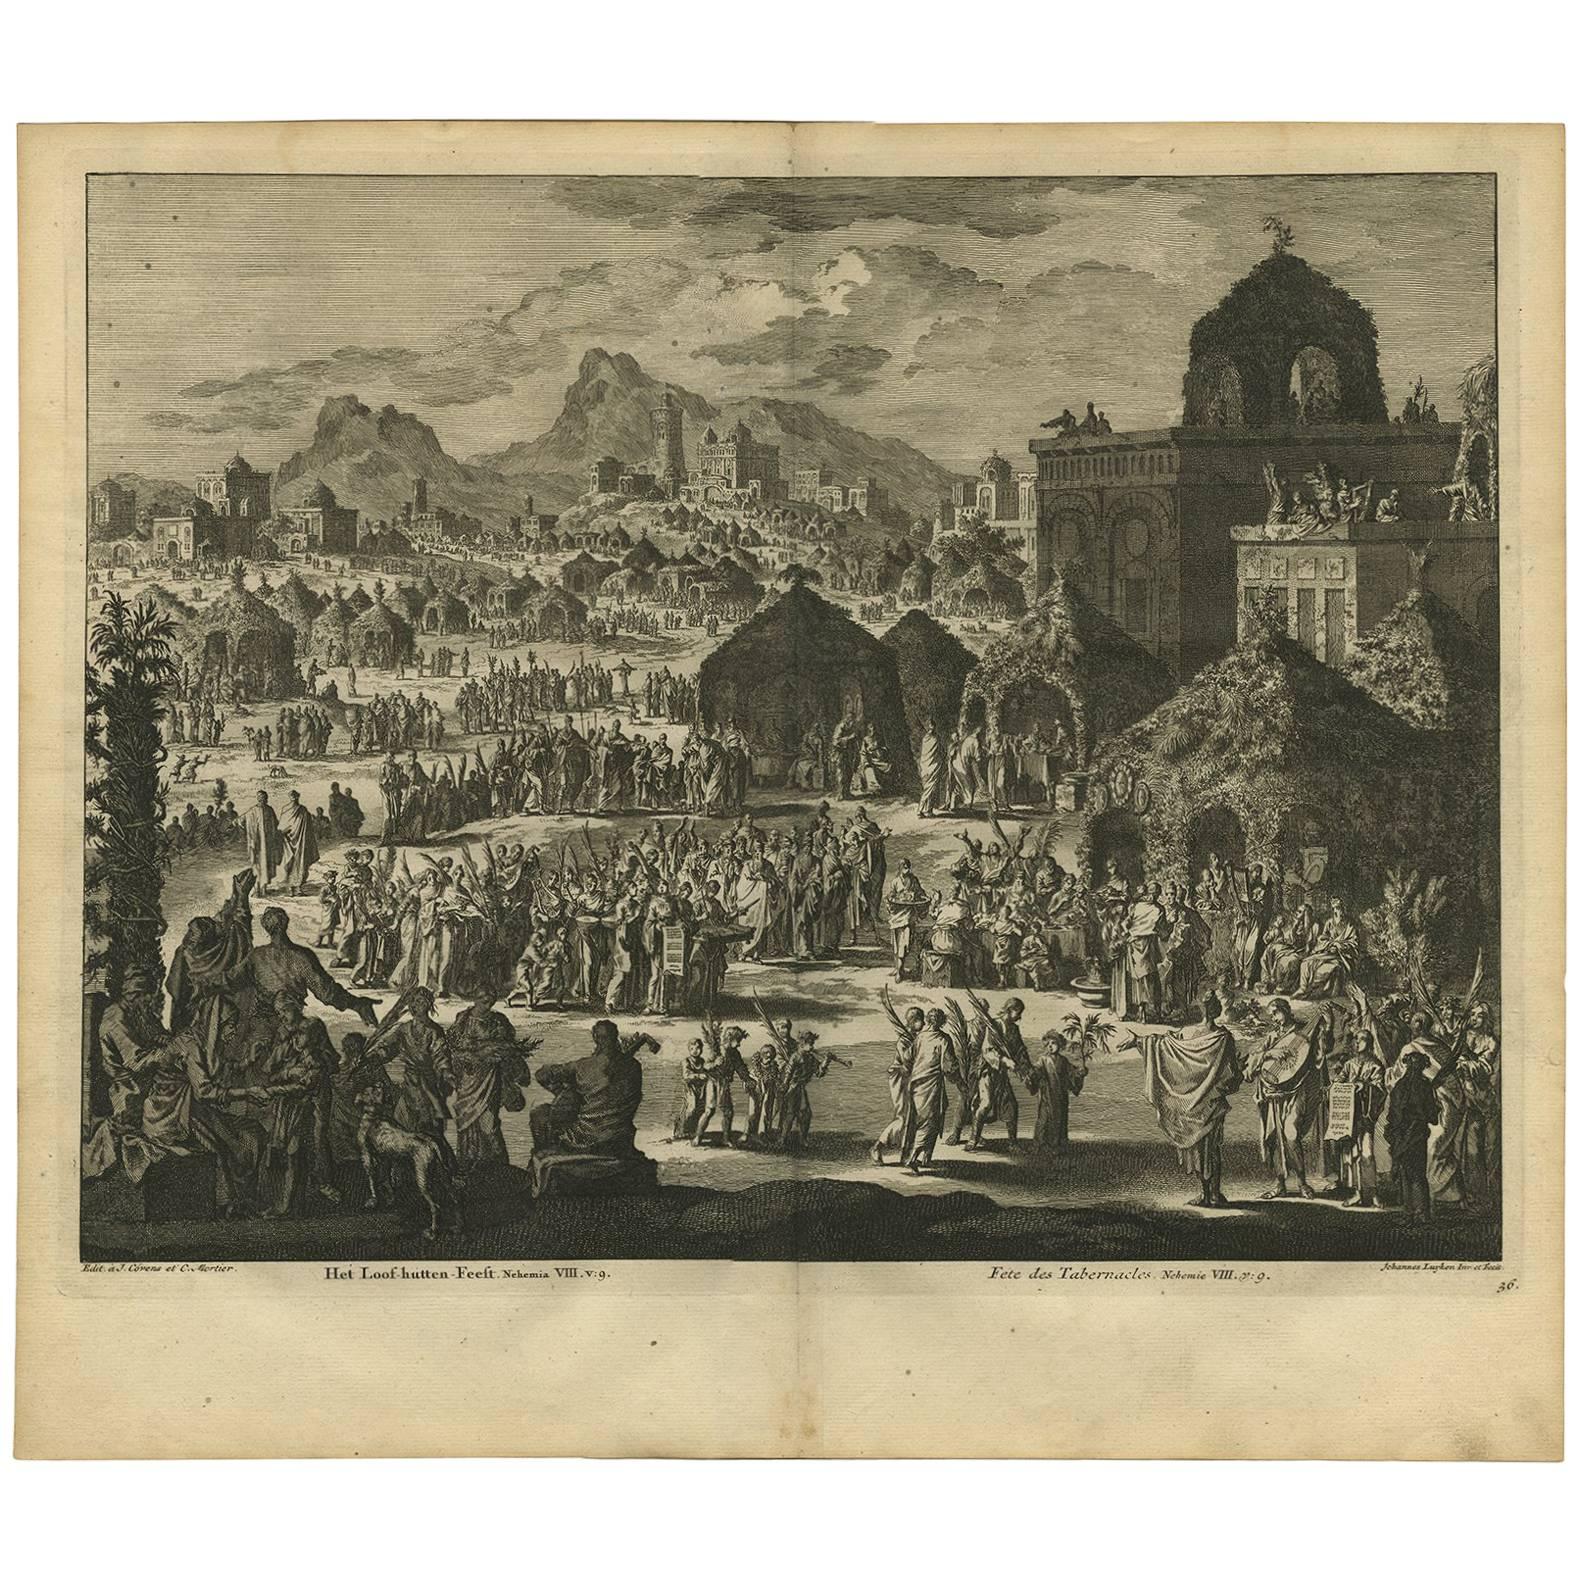 Impression ancienne de la Bible « the Festival of Shelters » (Le festival des abris) par J. Luyken, 1743